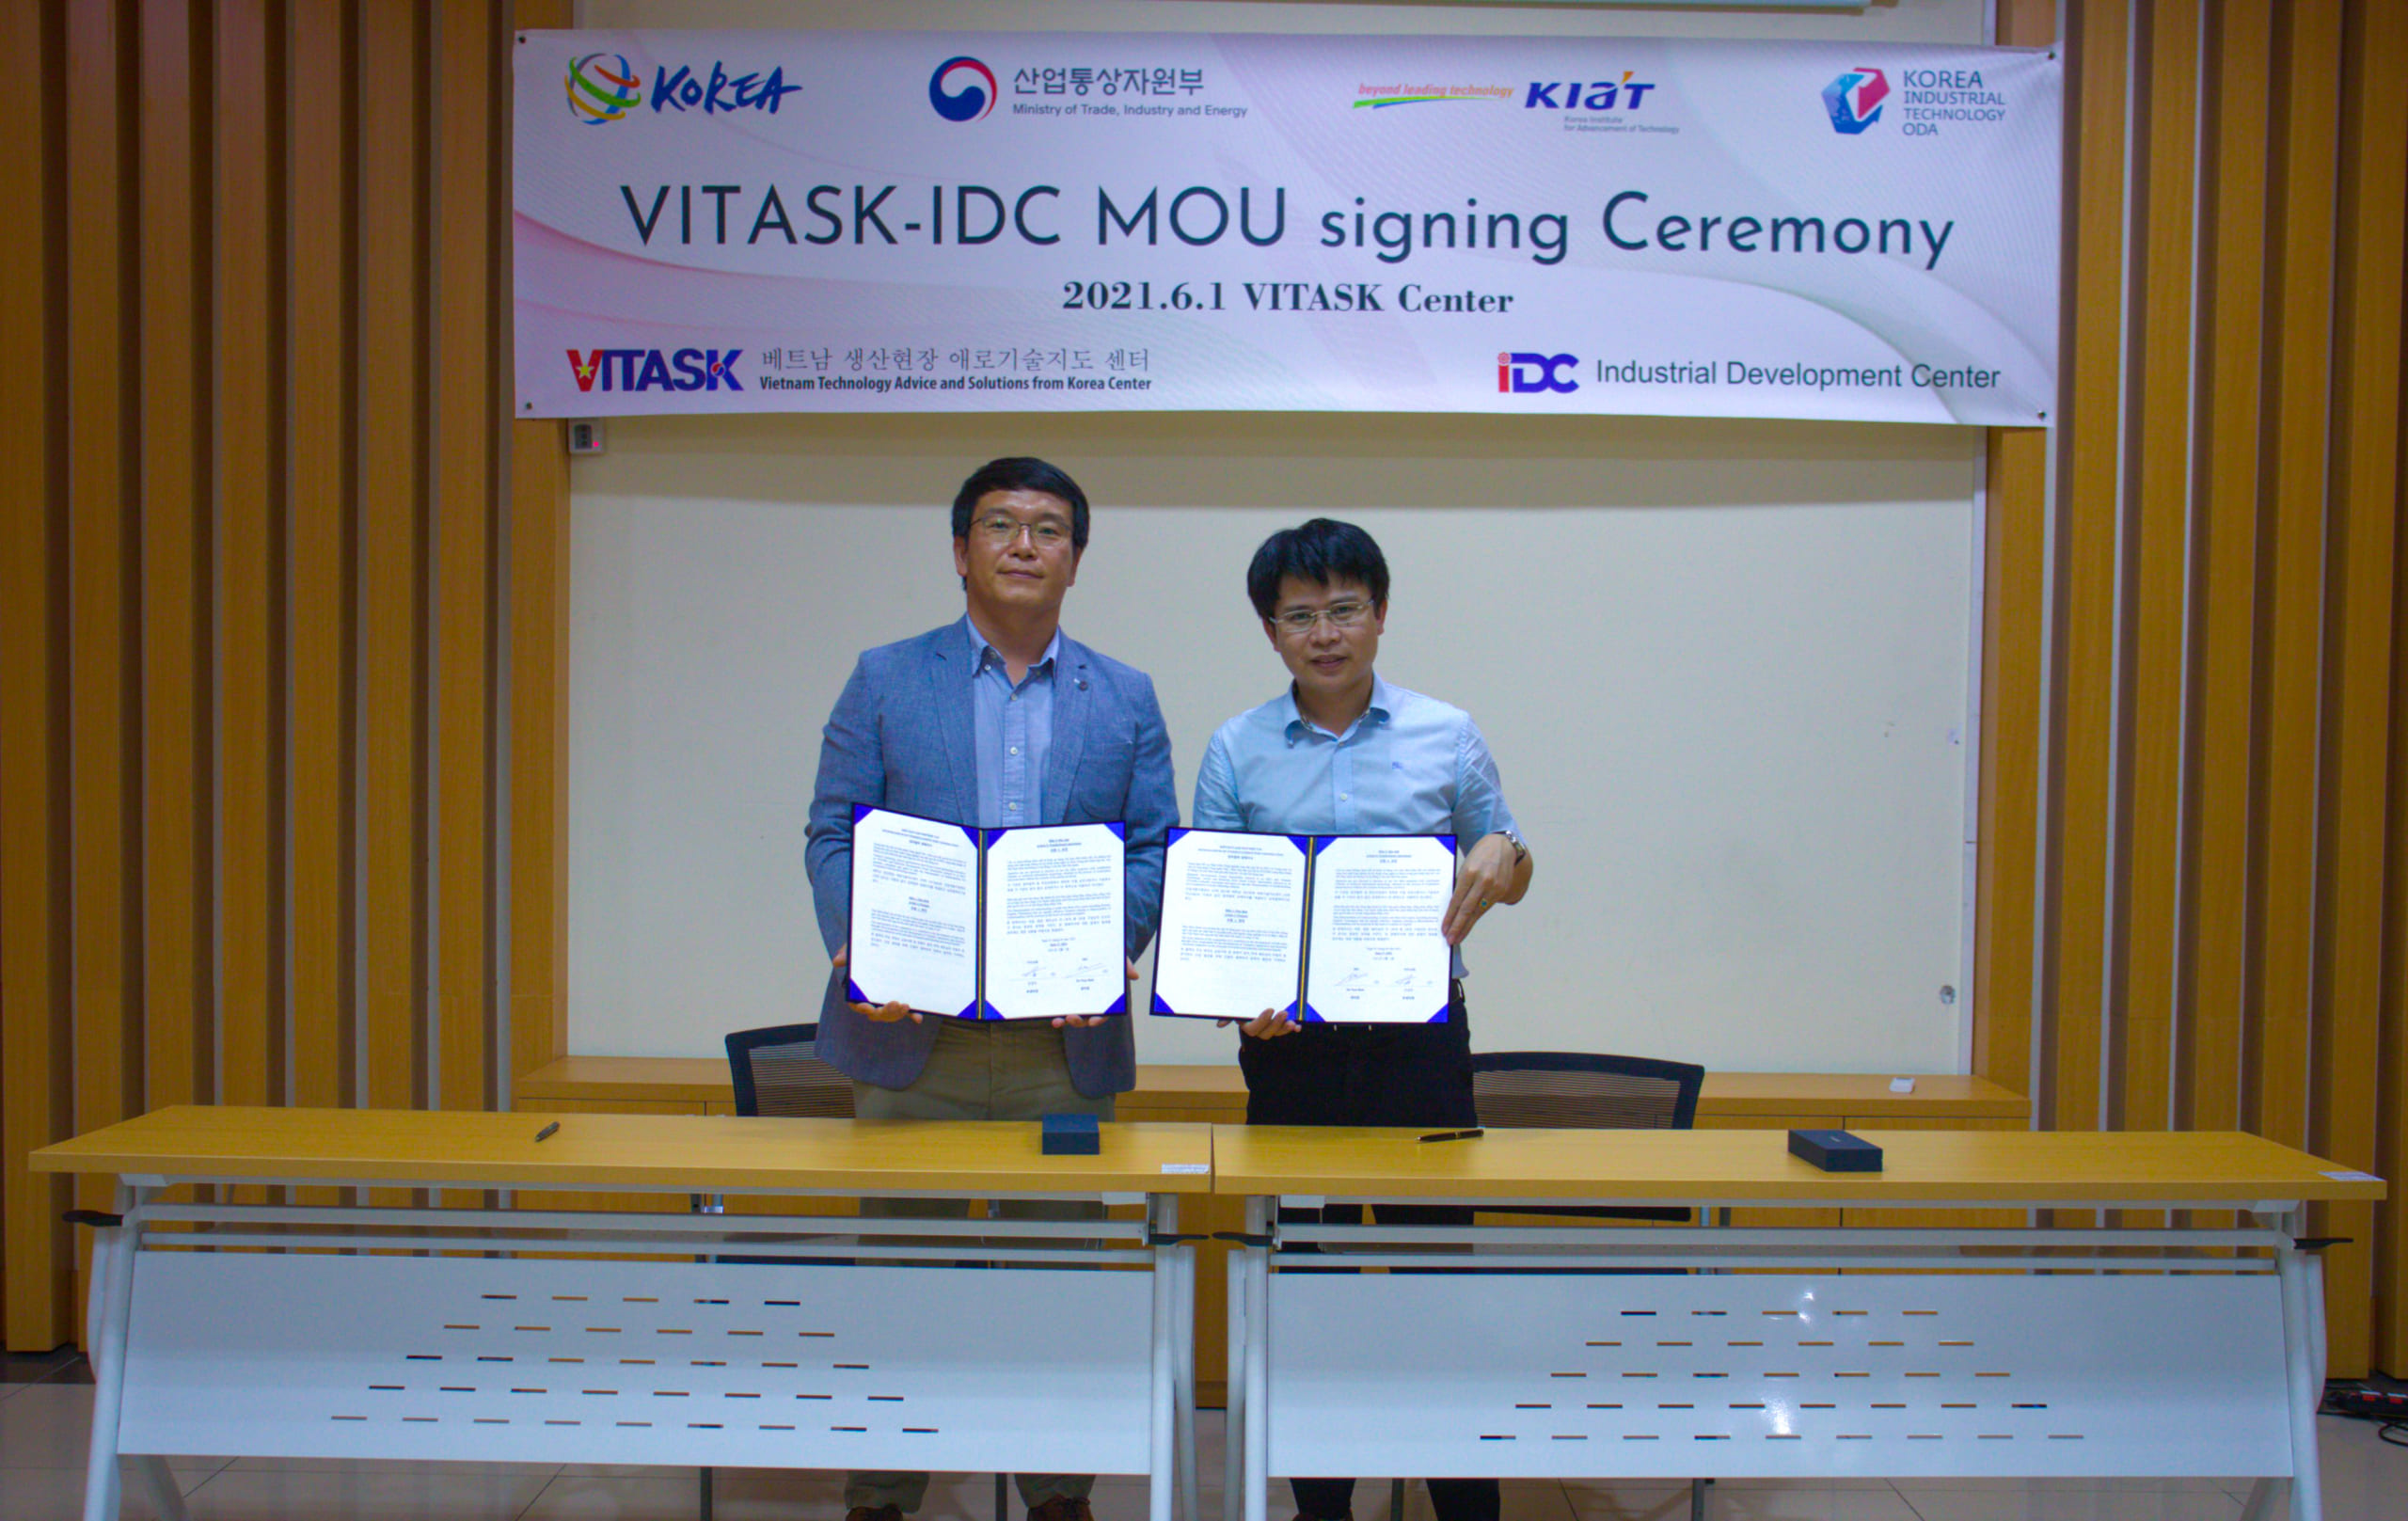 Phó Giám đốc VITASK An Kyoung Jin (bên trái) và Quyền Giám đốc IDC Đỗ Nam Bình (bên phải) đại diện hai bên ký Biên bản ghi nhớ